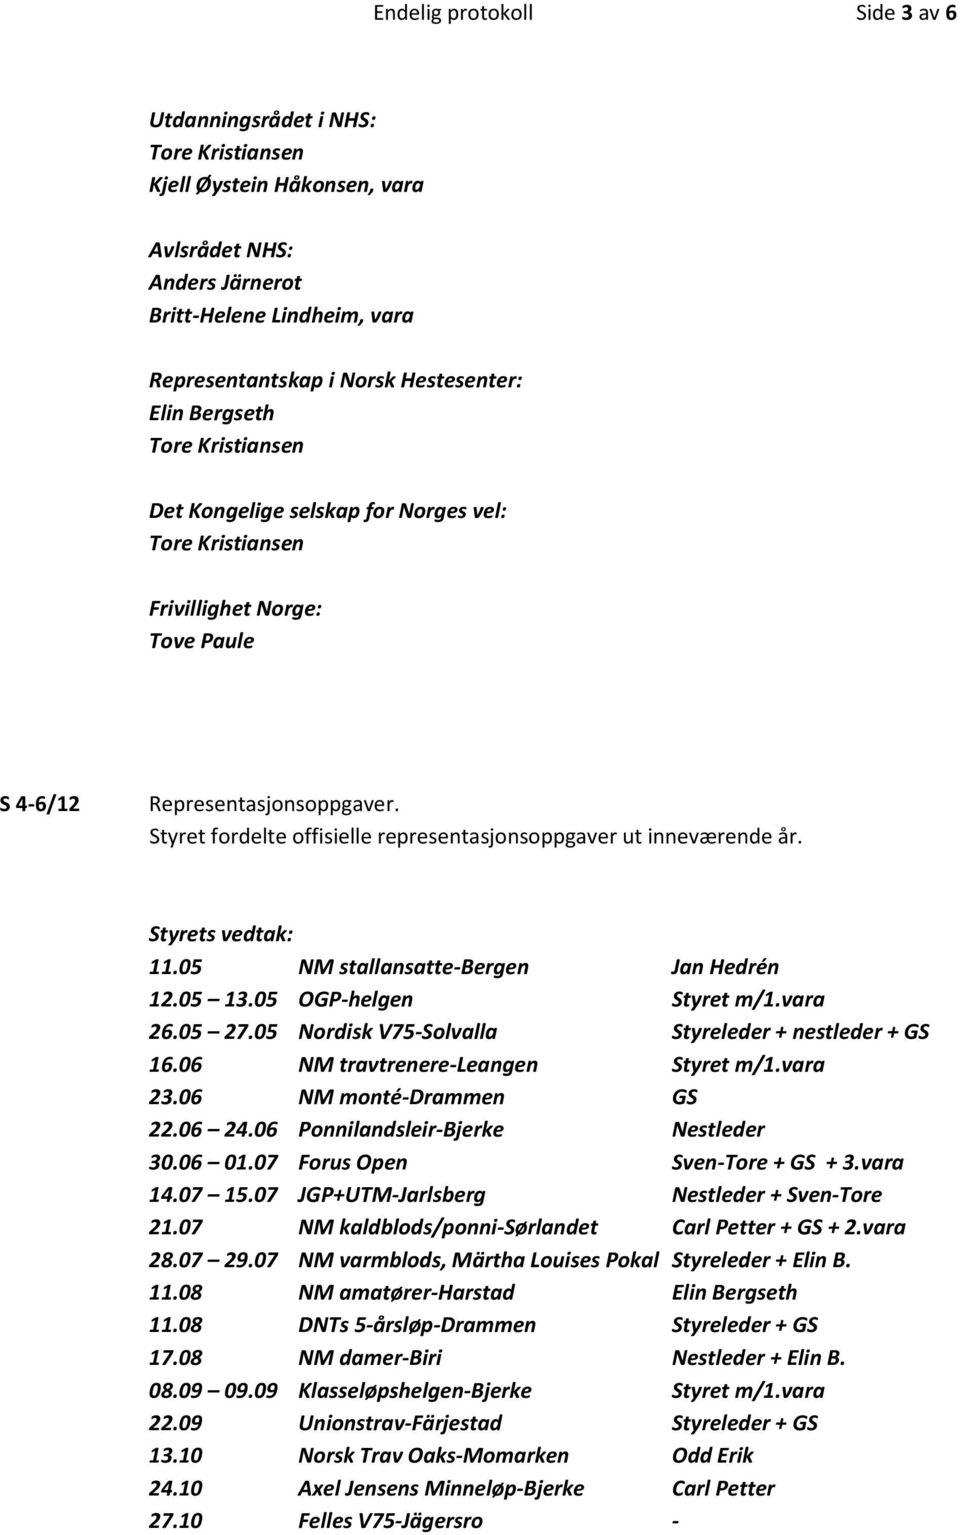 Styret fordelte offisielle representasjonsoppgaver ut inneværende år. 11.05 NM stallansatte-bergen Jan Hedrén 12.05 13.05 OGP-helgen Styret m/1.vara 26.05 27.